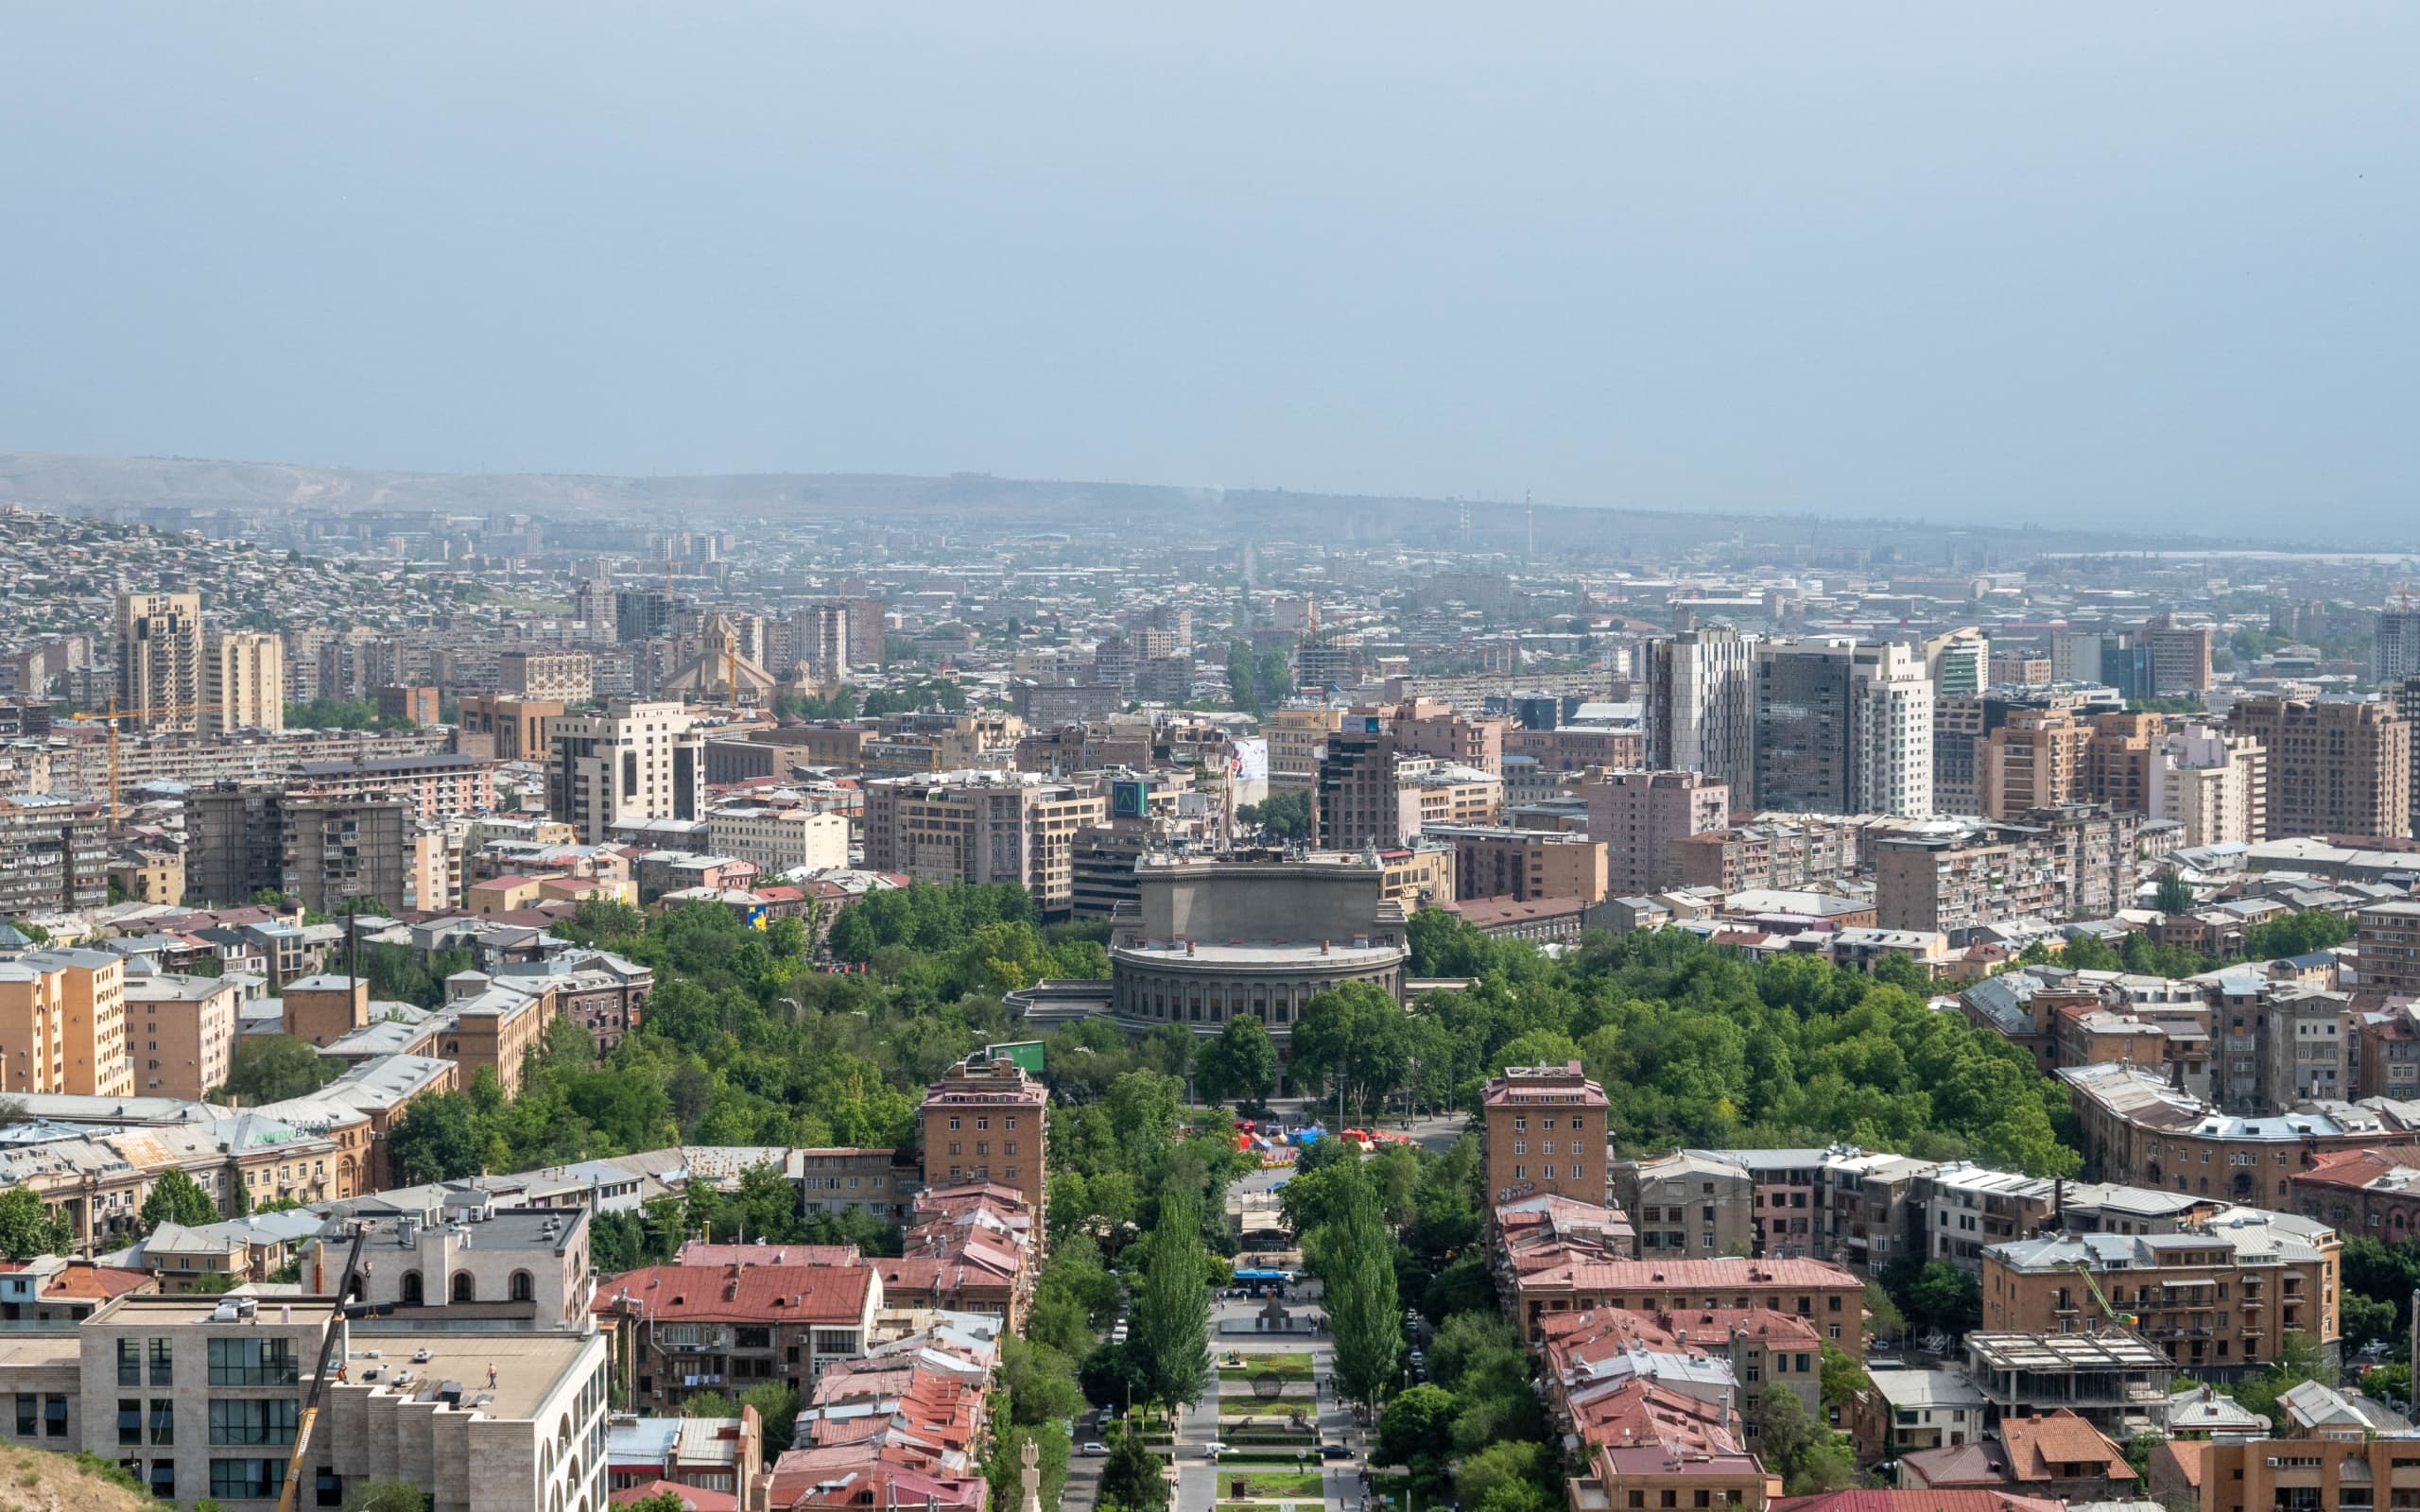 В Ереван за снарягой. Магазин, Каскад и немного города.